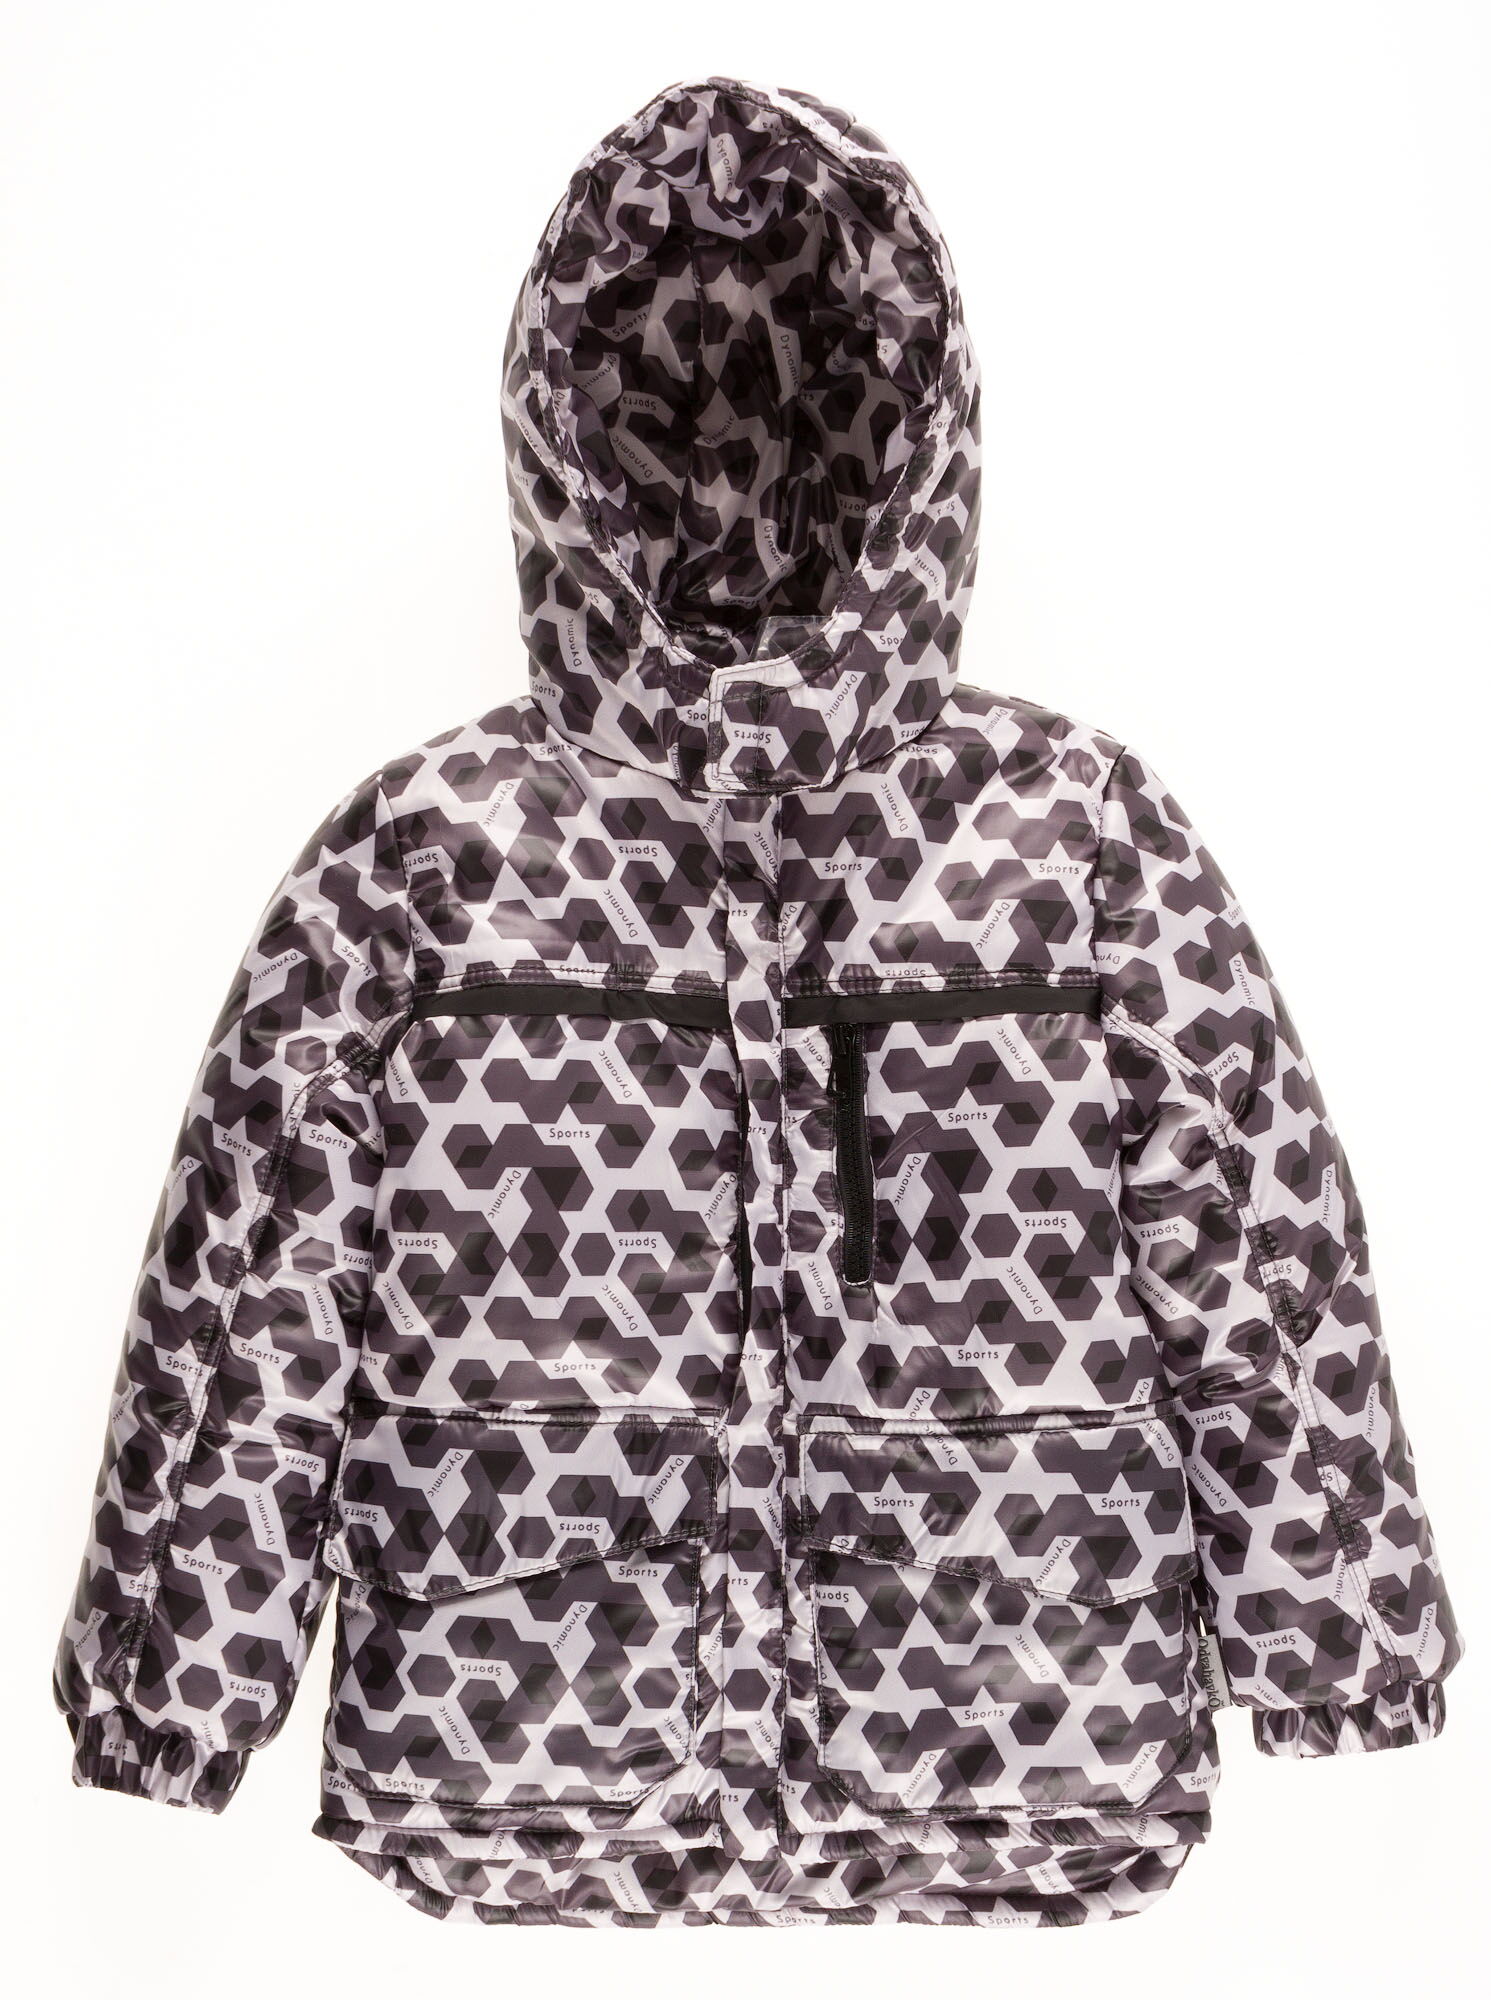 Комбинезон зимний раздельный для мальчика (куртка+штаны) Одягайко геометрия черный 20088+01241О - фото